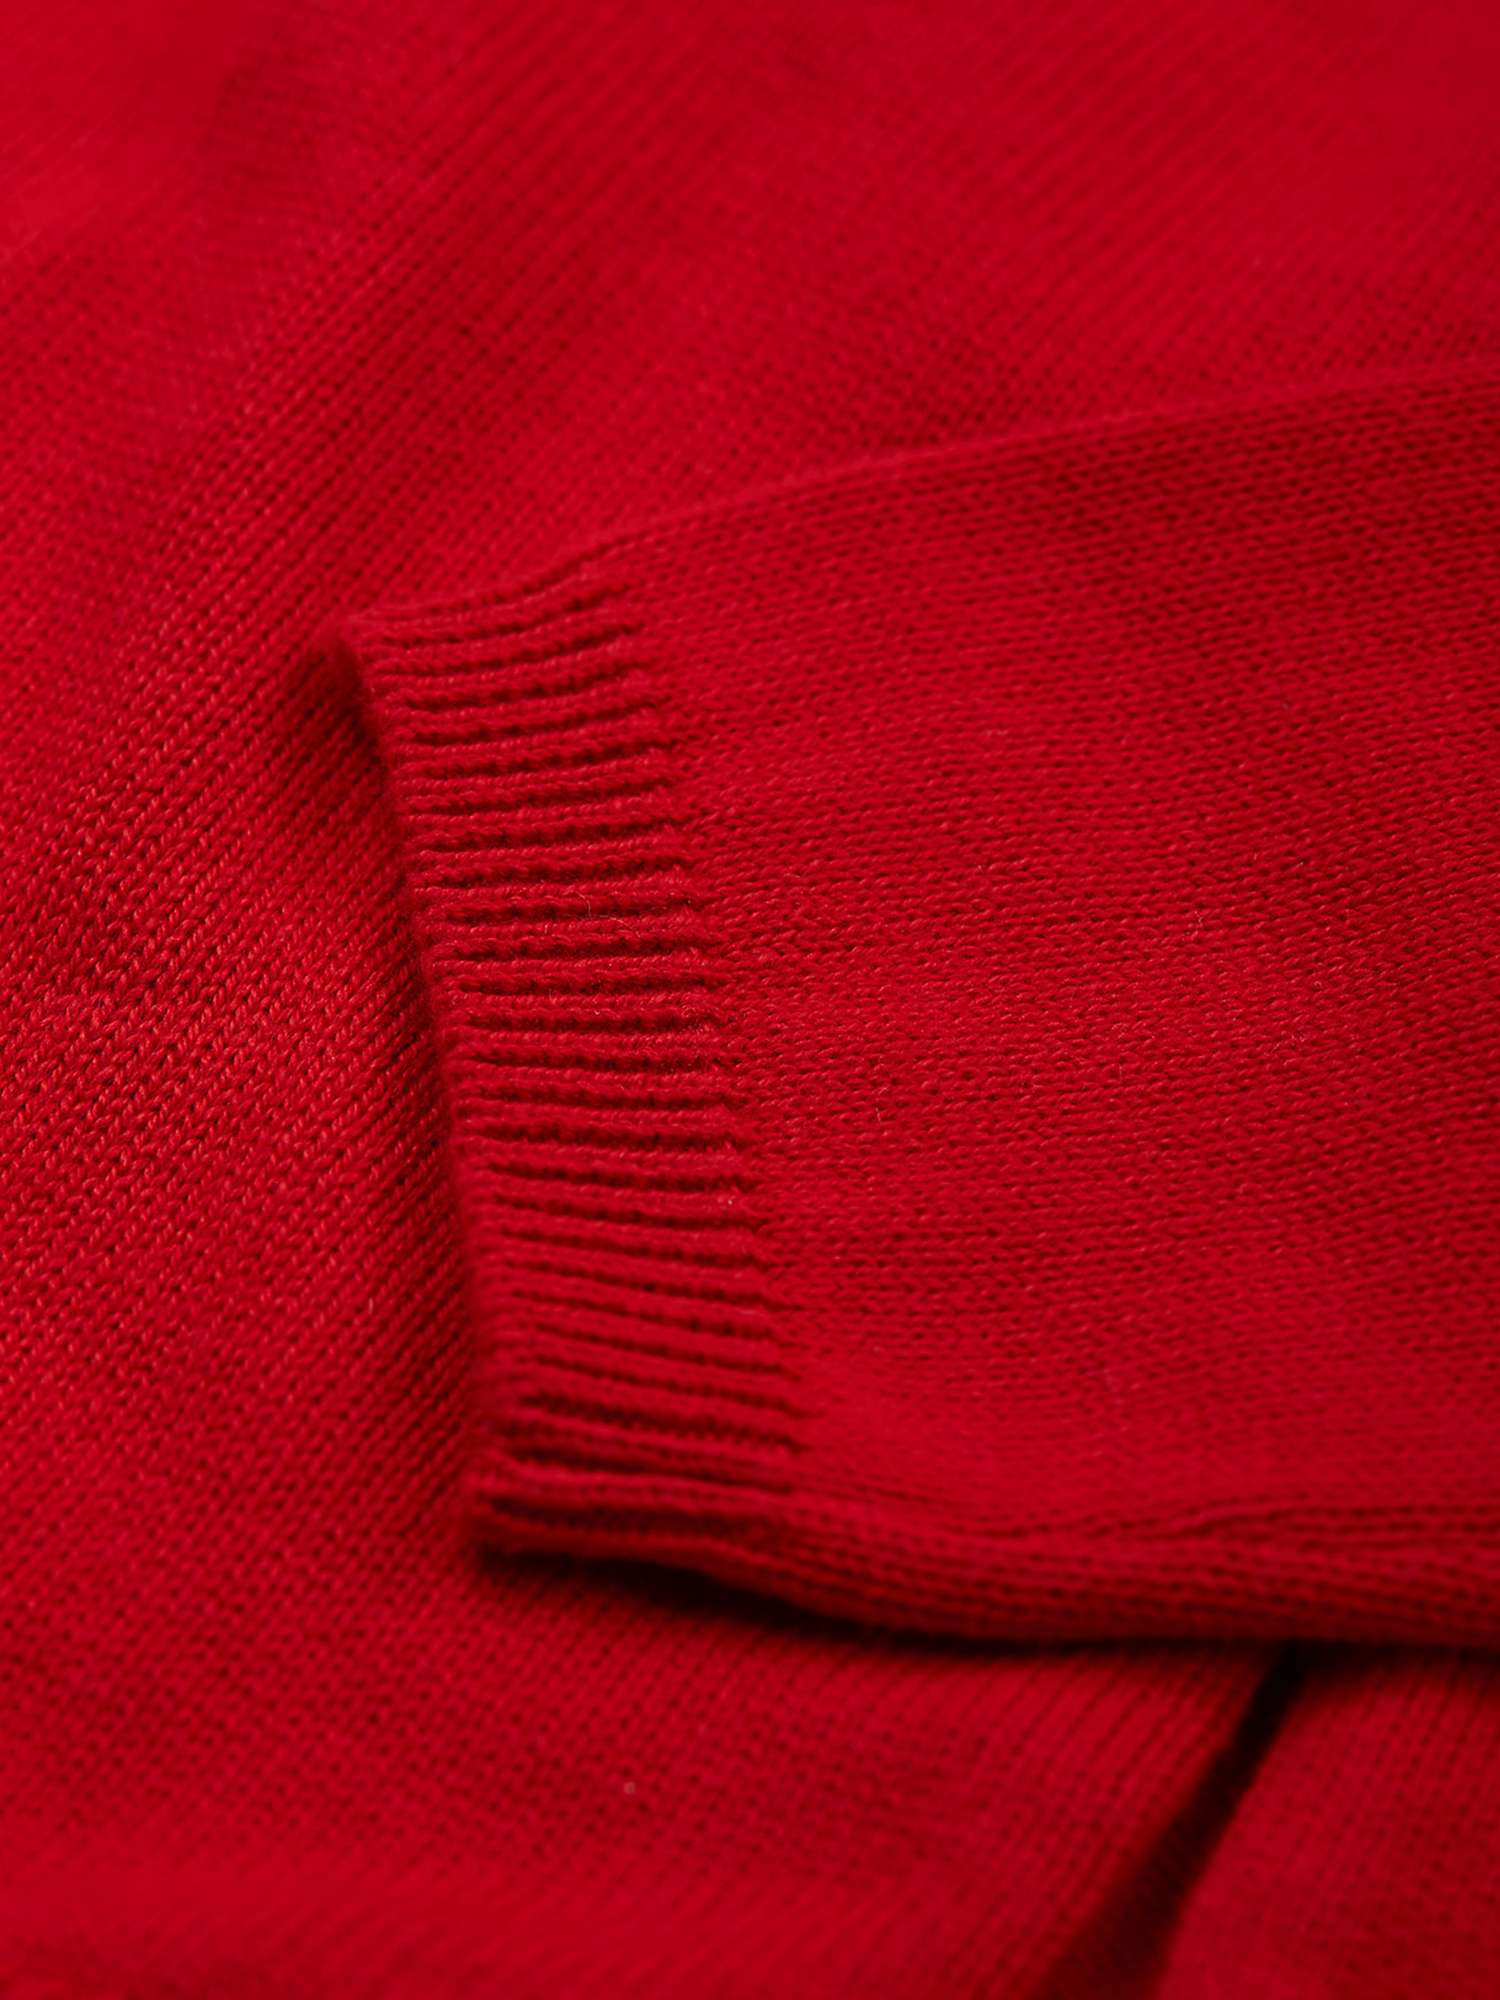 Buy Frugi Baby Kenna Organic Cotton Fairisle Cardigan, True Red/Multi Online at johnlewis.com